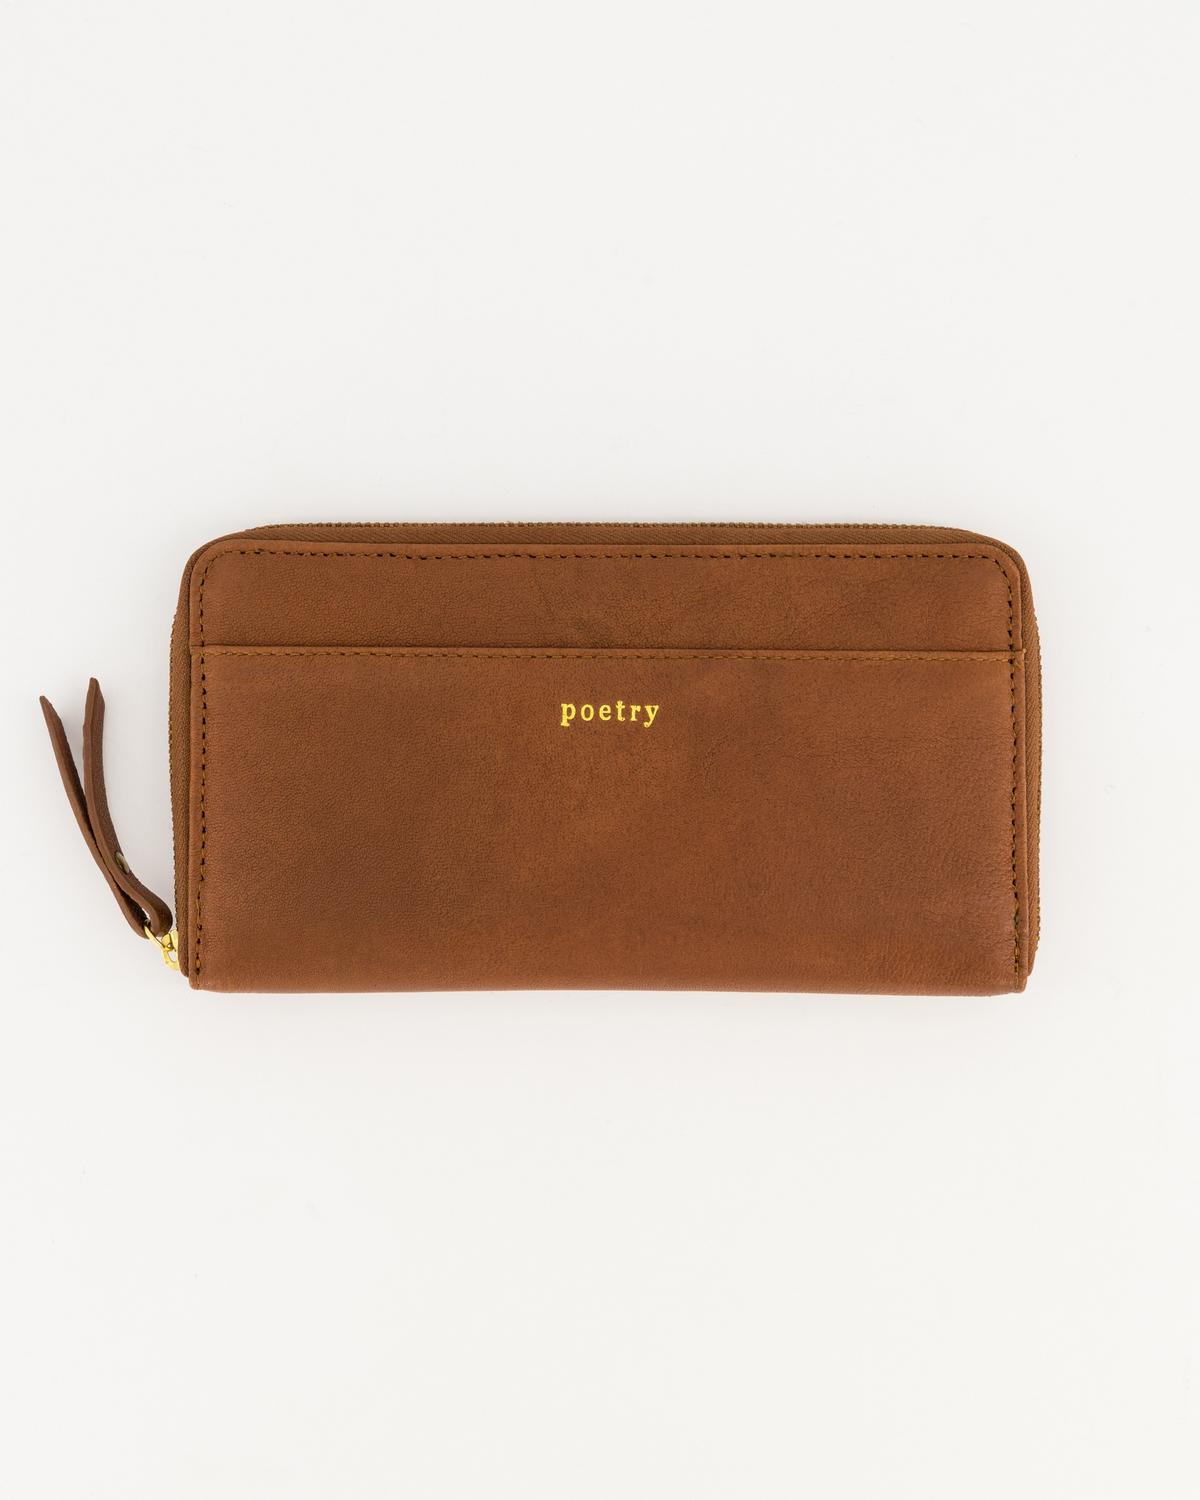 Poetry Heloise Pocket Wallet -  Tan